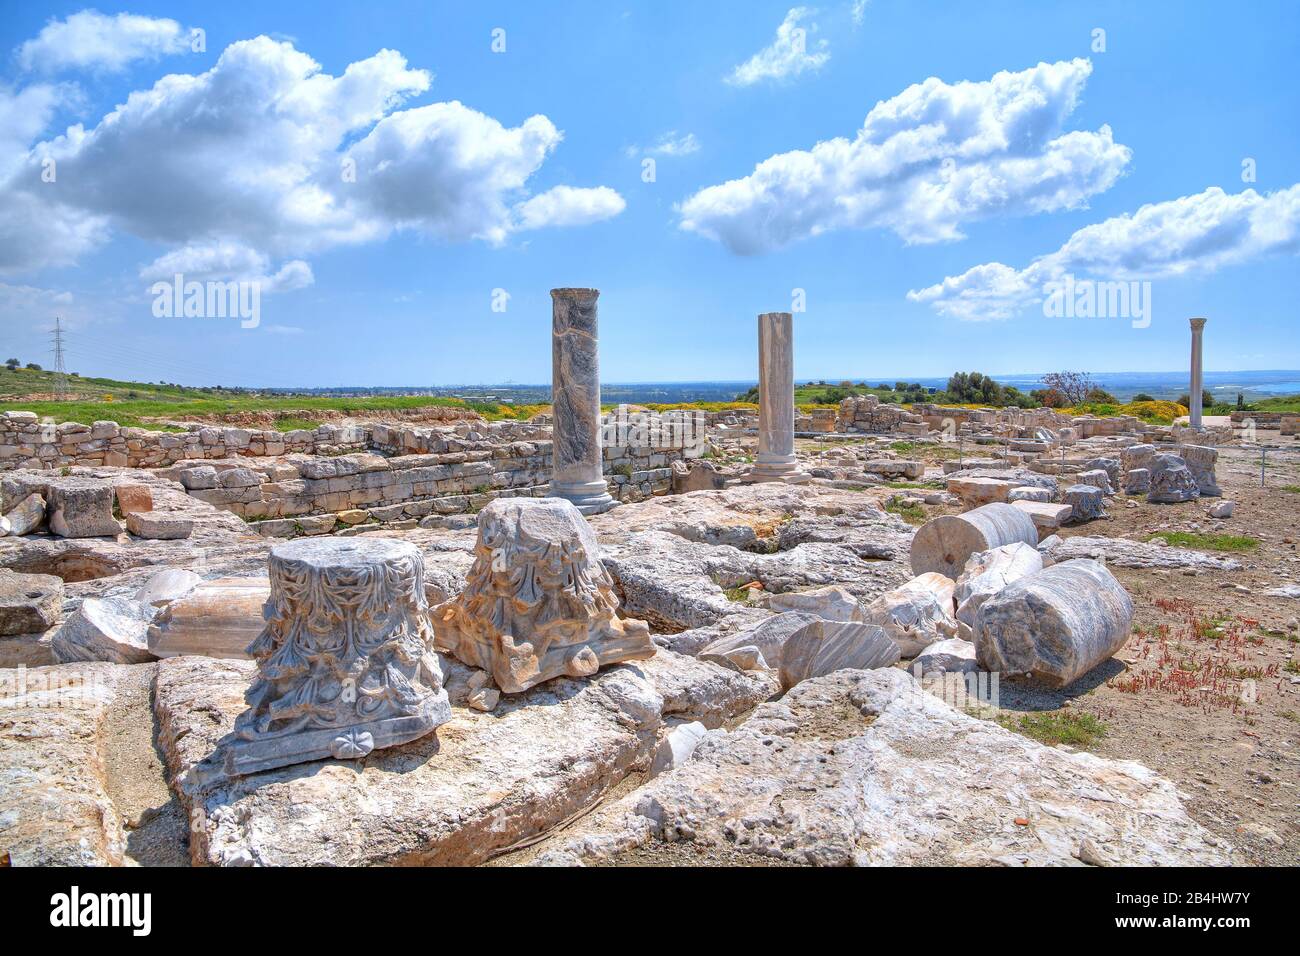 Les capitales du pilier Corinthien dans le site archéologique antique Kourion à Limassol, côte méditerranéenne, Chypre Banque D'Images